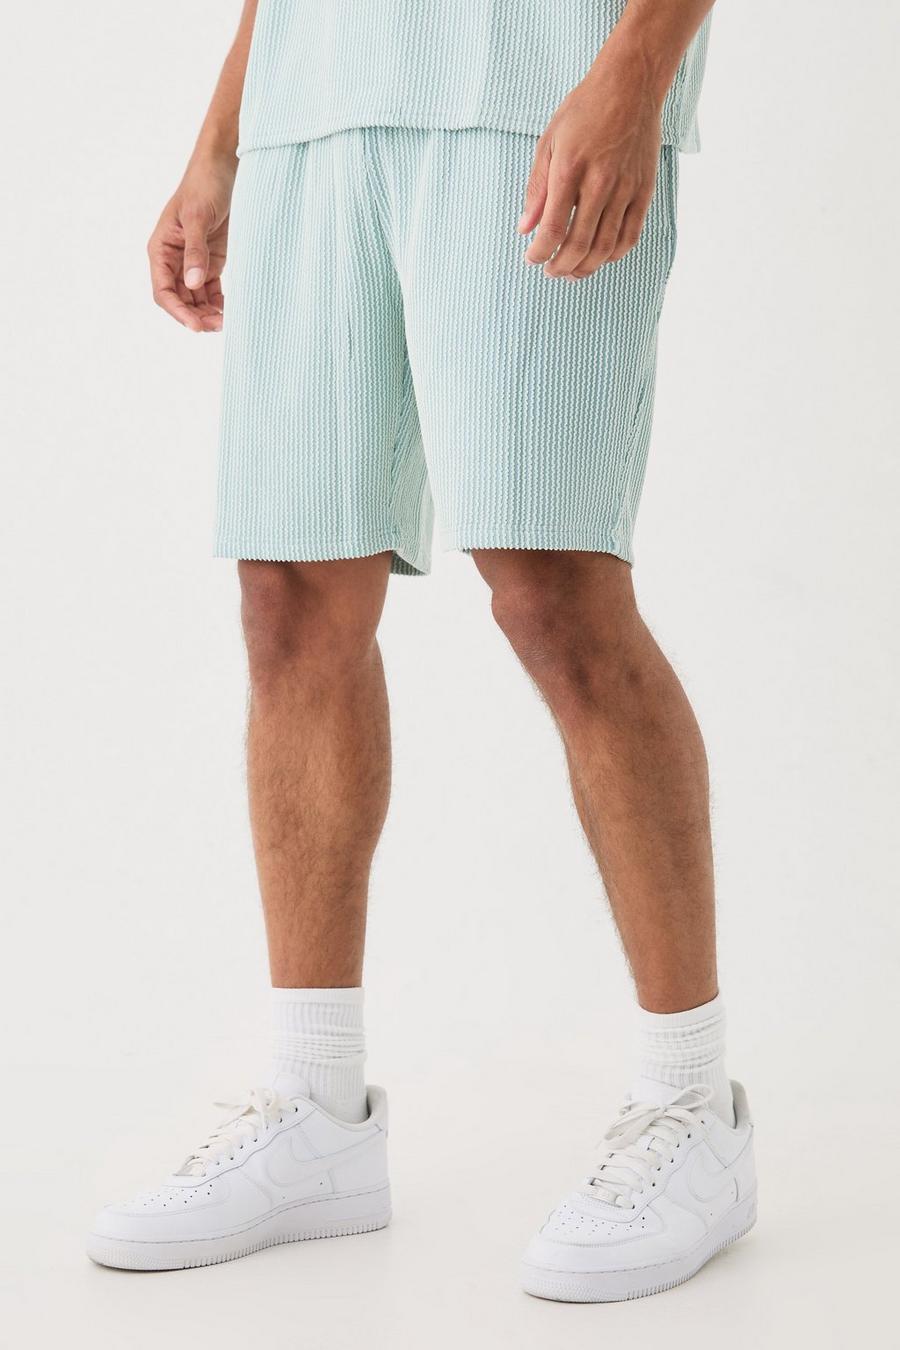 Dusty blue Nike Short legging taille mi-haute 7 pouces Noir